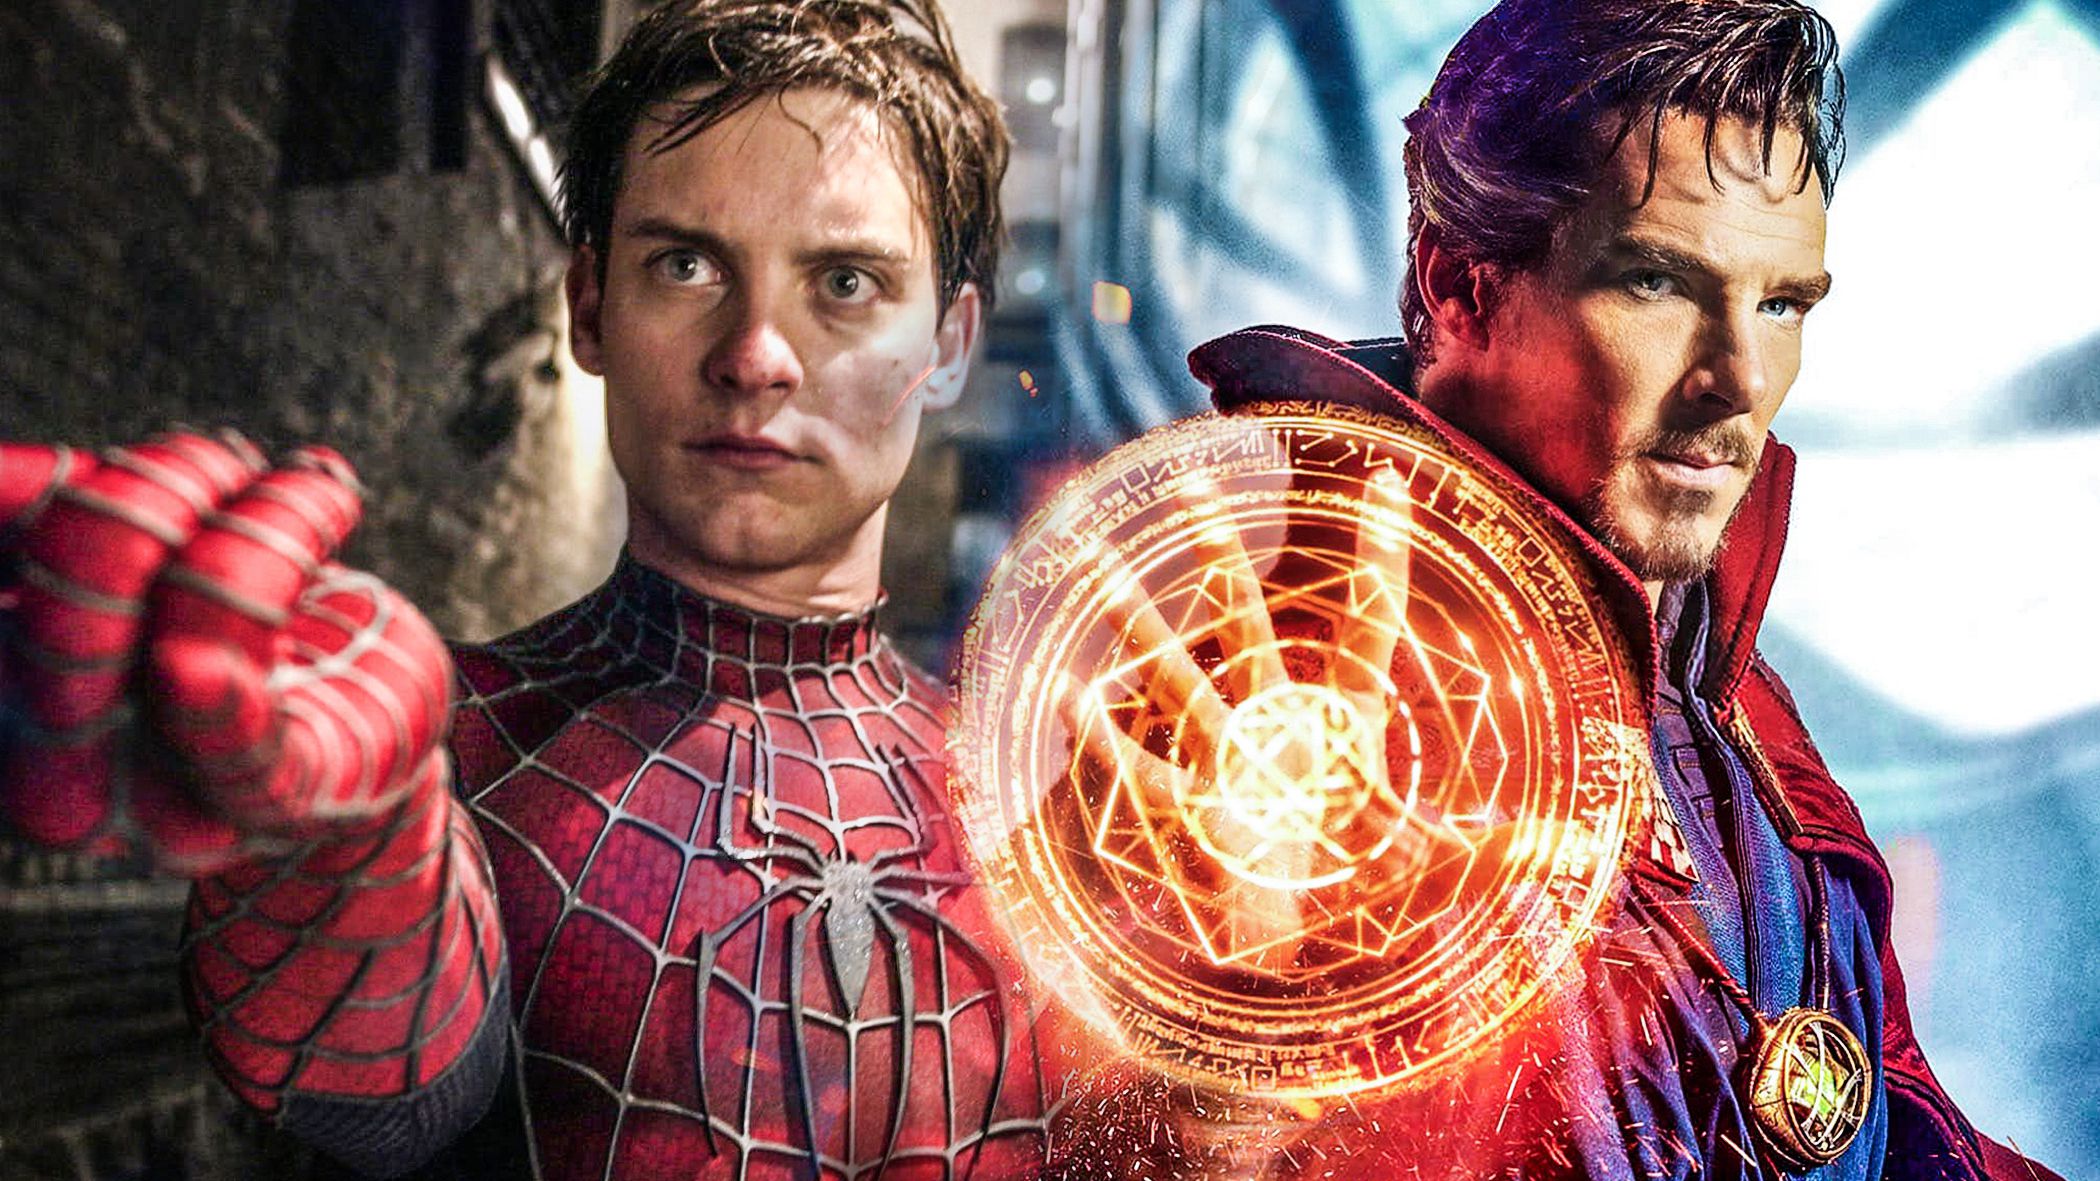 Doutor Estranho será novo mentor de Peter Parker em 'Homem-Aranha